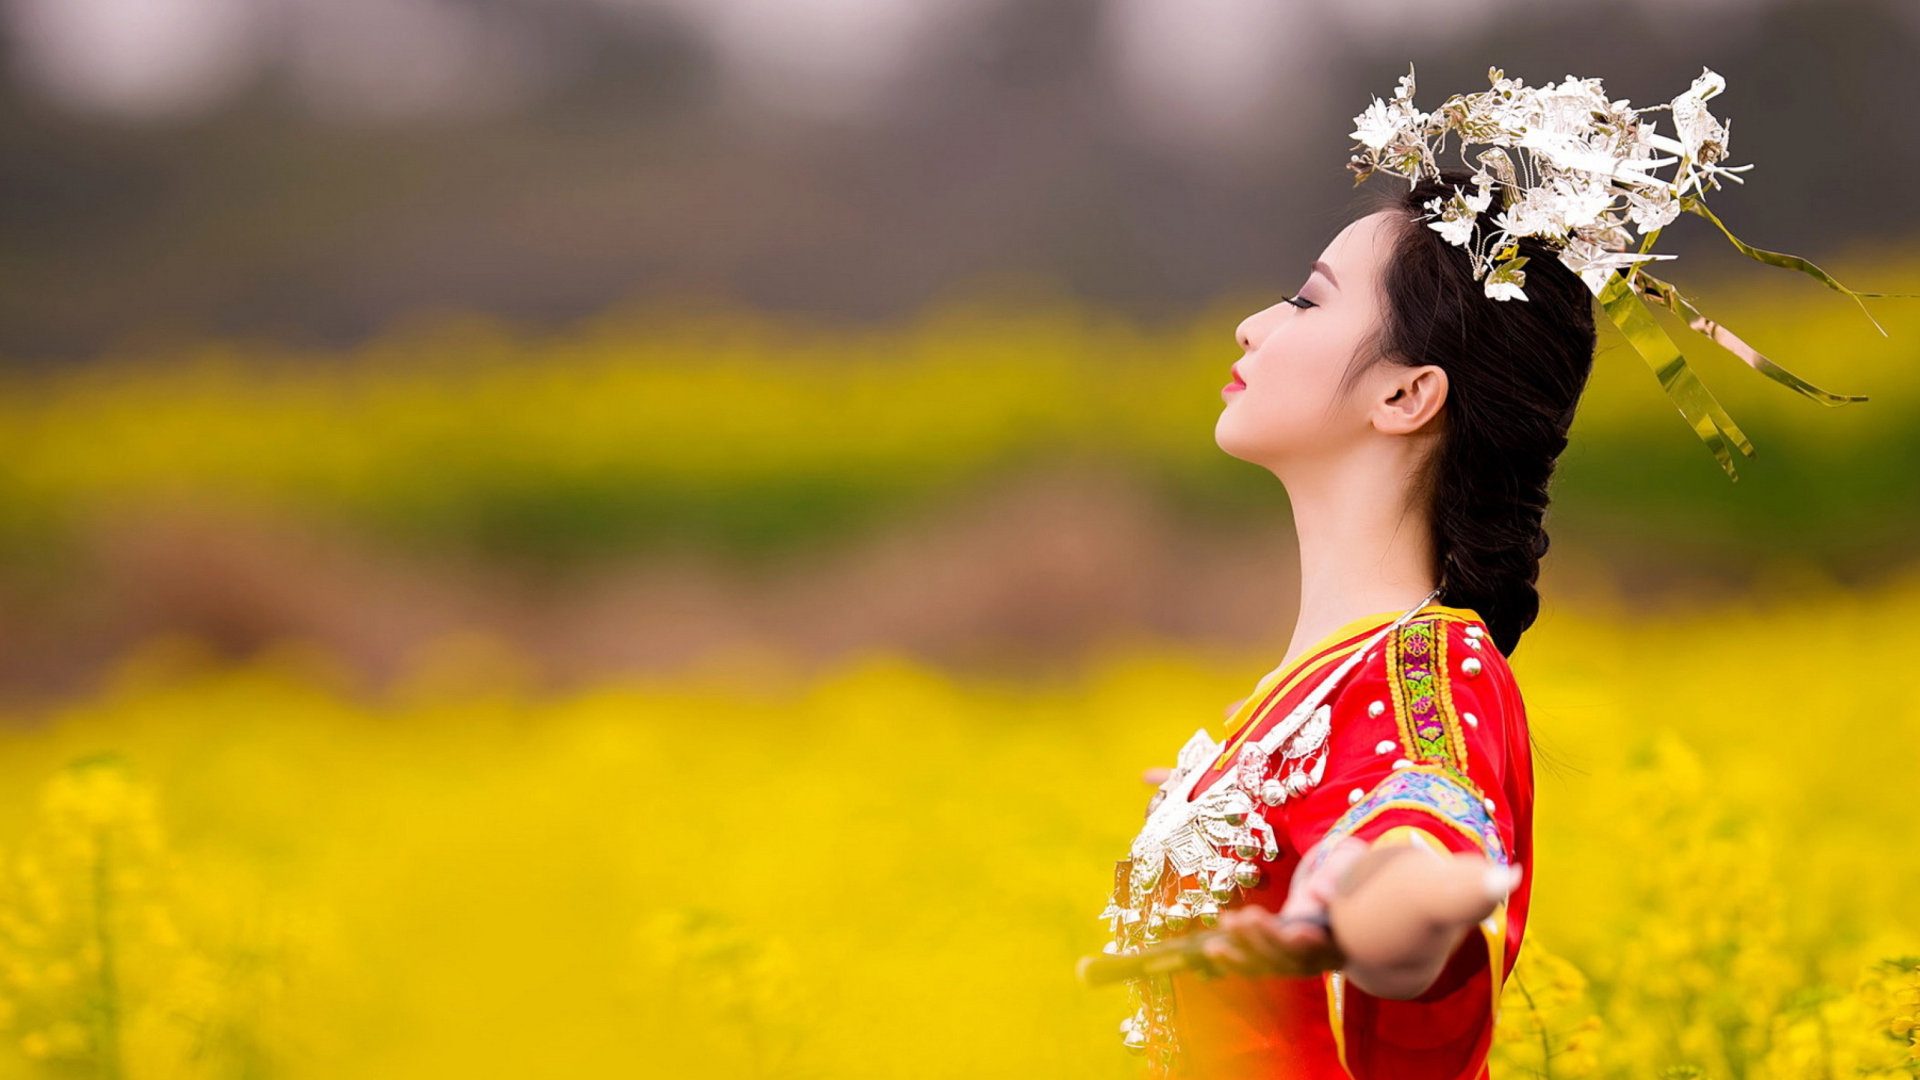 Обои Asian Girl In Yellow Flower Field 1920x1080